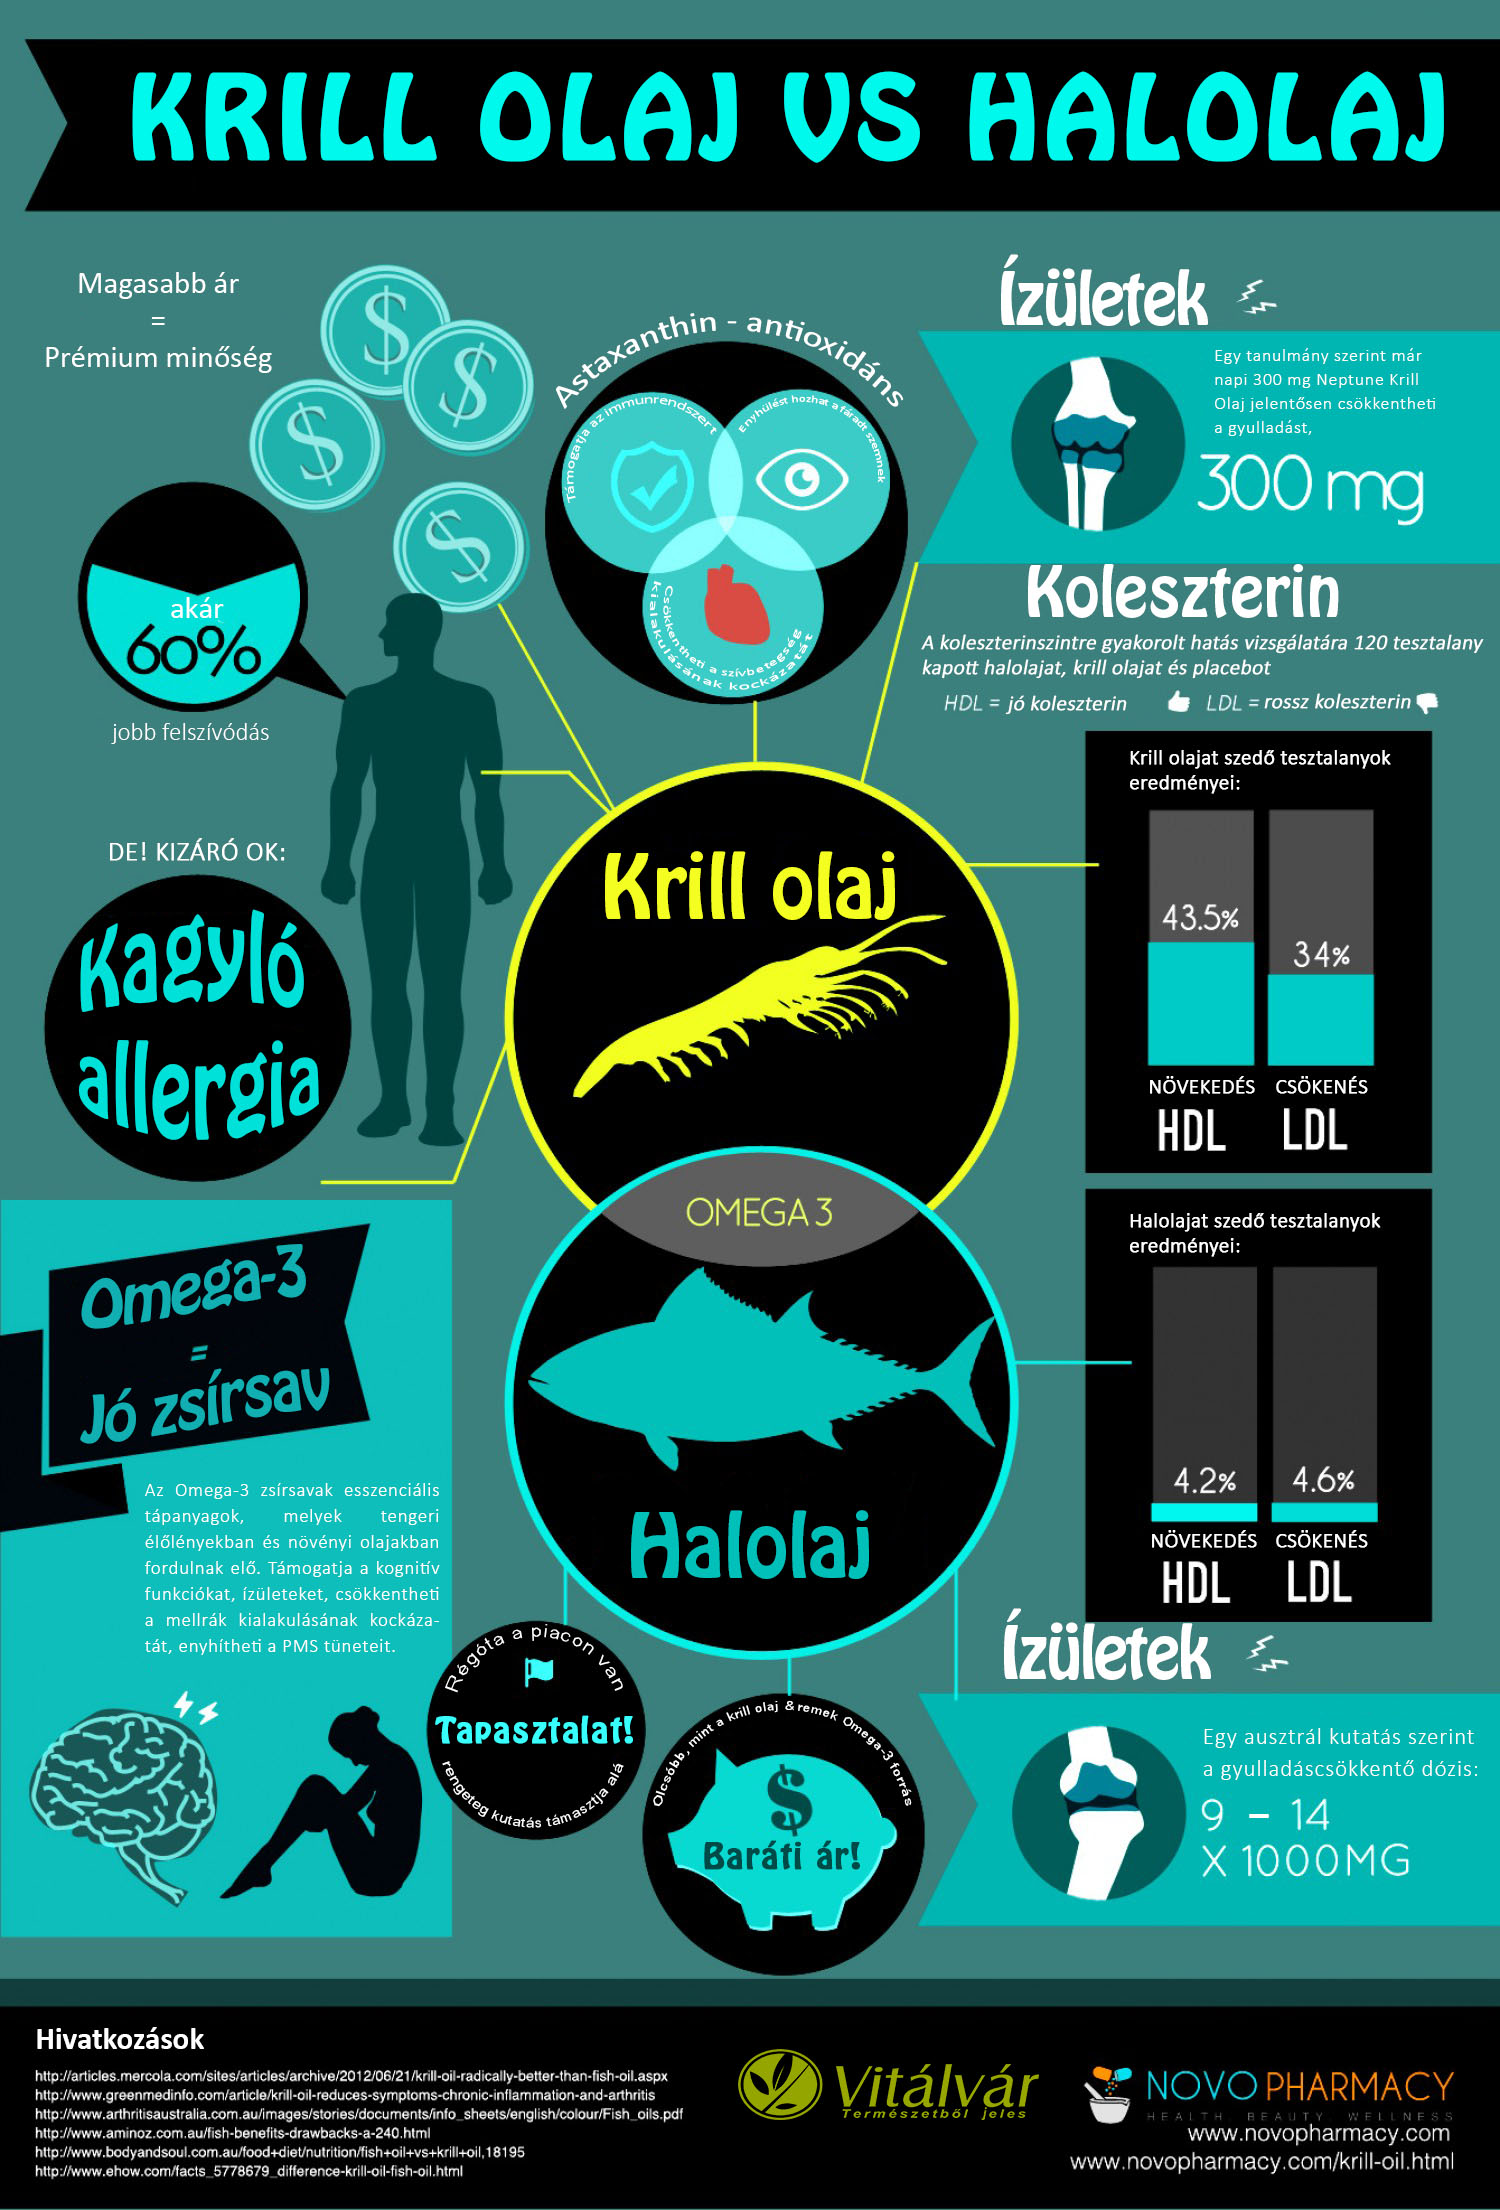 Krill-olaj? Mi a különbség az egyes omega-3 készítmények között?